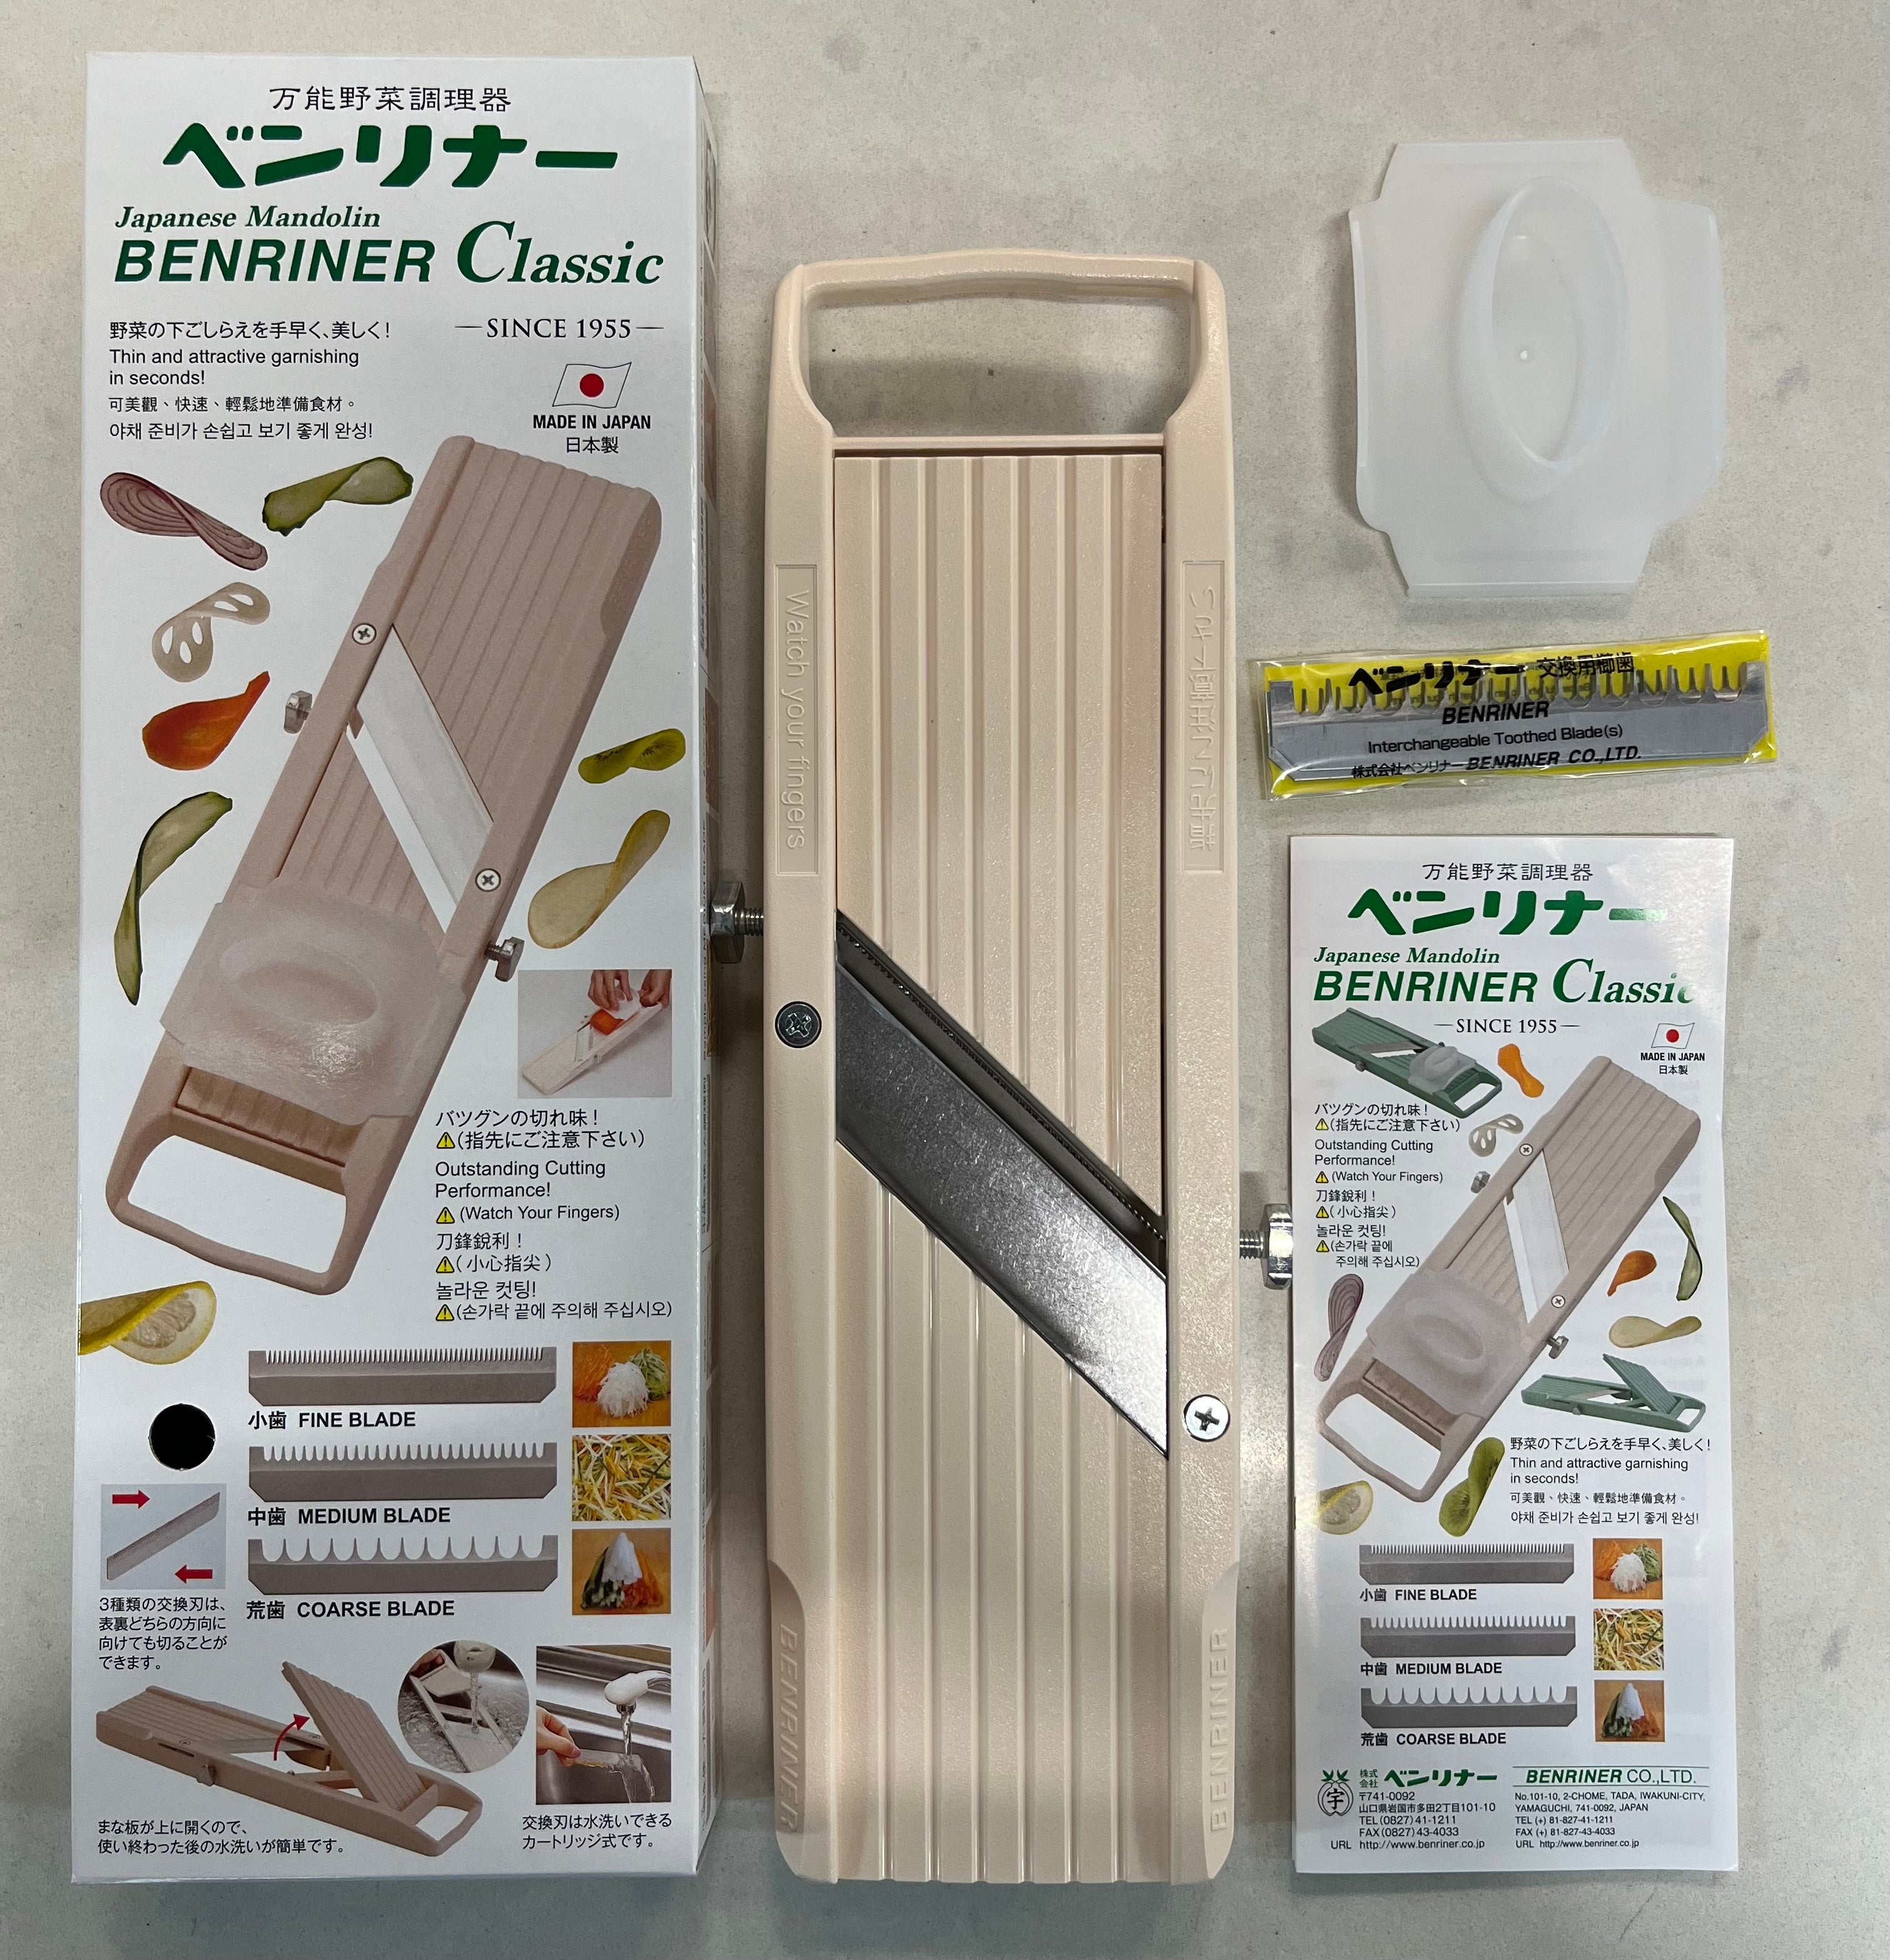 New Mandoline Slicer New Benriner Japanese Mandoline Slicer Green Made in Japan by VV Brother's Store